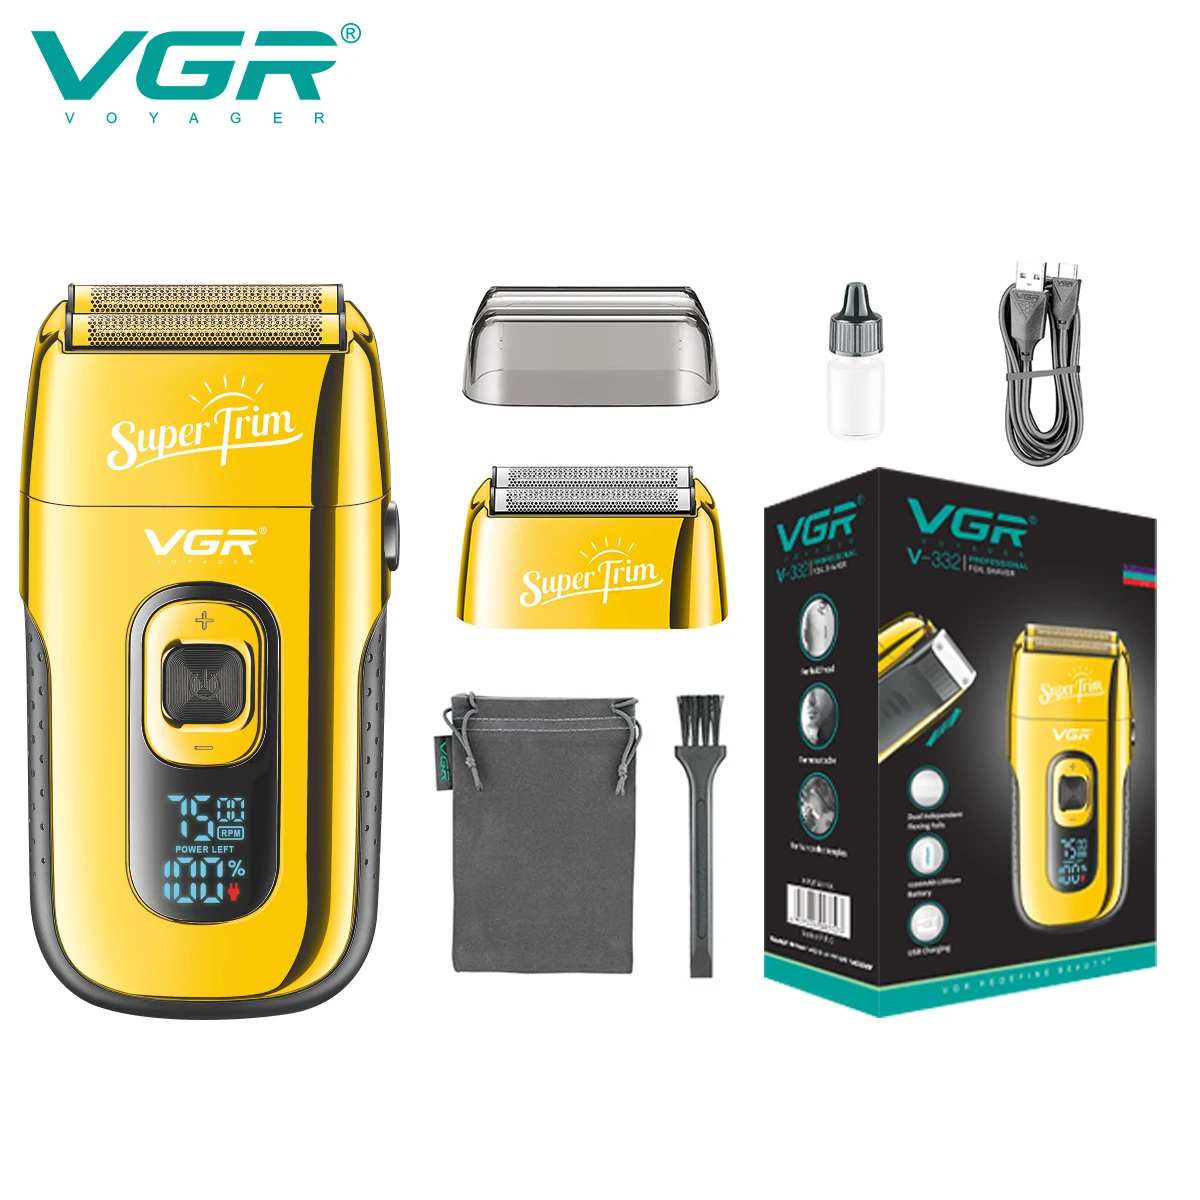 

VGR Hair Trimmer Electric Shaver Professional Razor Household Beard Trimmer Reciprocating Mini Shaving Machine for Men V-332